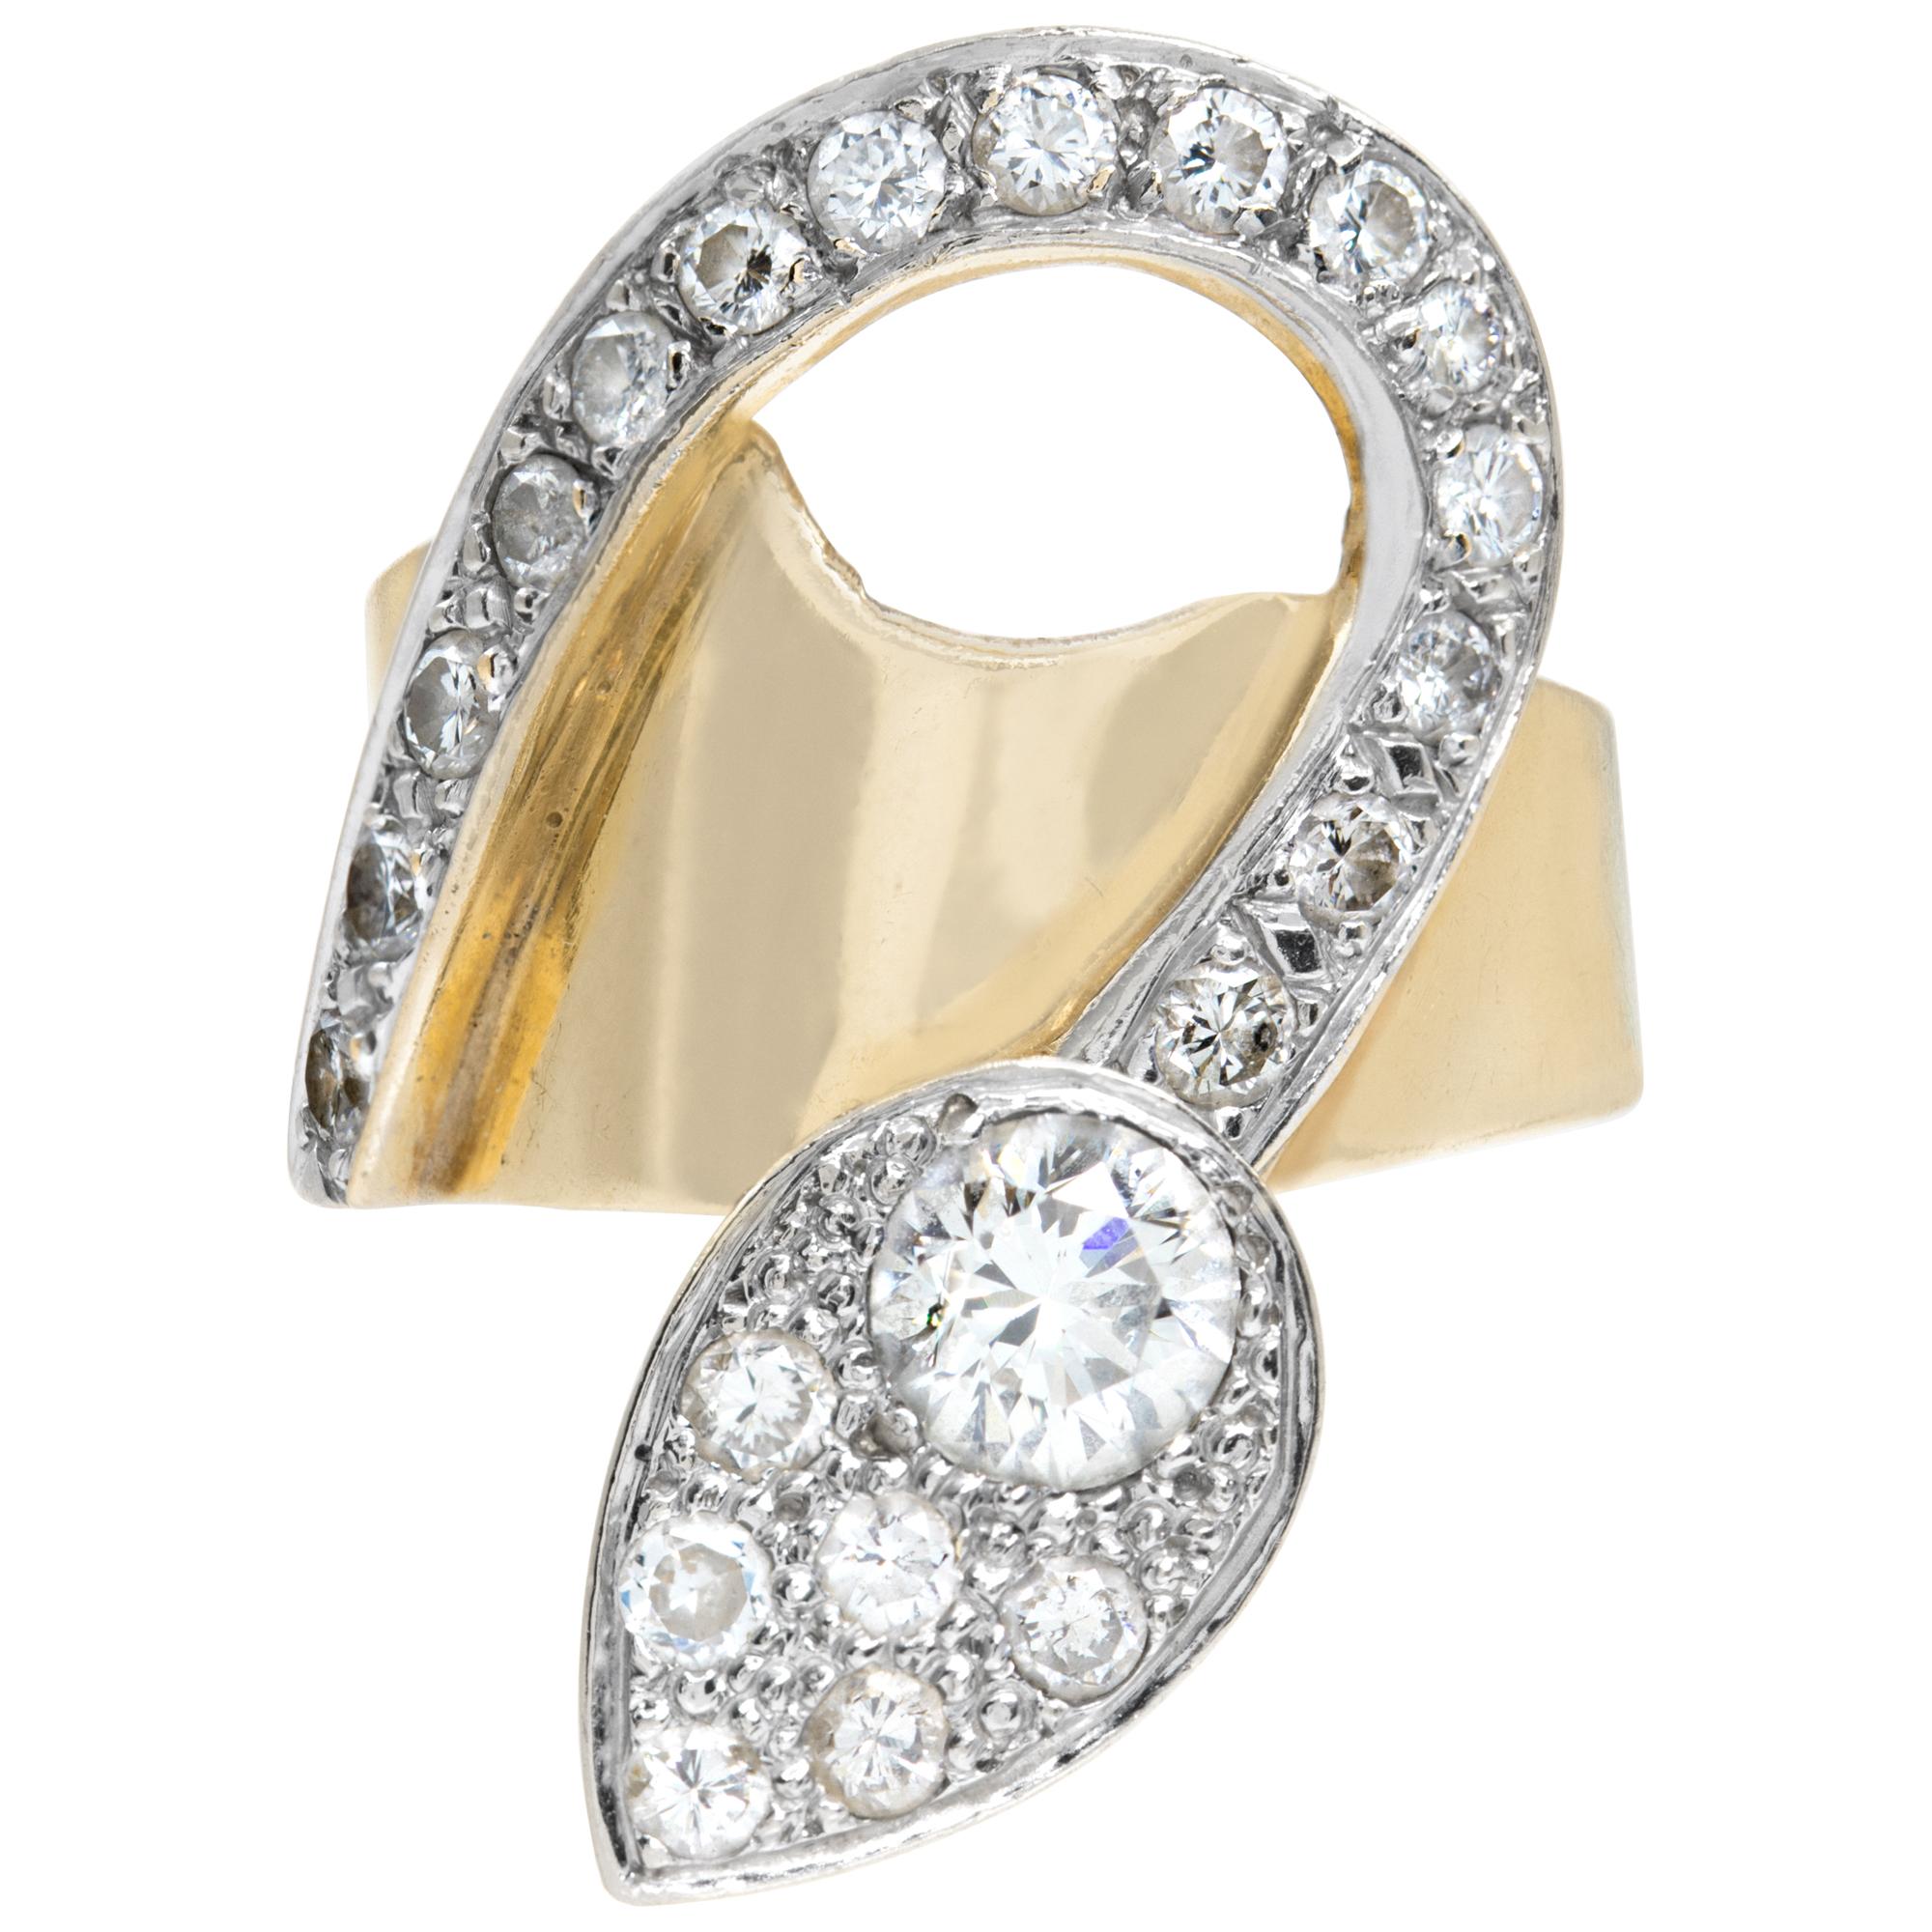 Bague élégante en diamant en or jaune 14k. Les diamants ronds de taille brillant totalisent environ 2,00 carats (diamant rond central environ 0,75 carat), estiment la couleur G-H, la pureté VS-SI.  Mesures du motif central : 30mm H x 20mm L. Taille